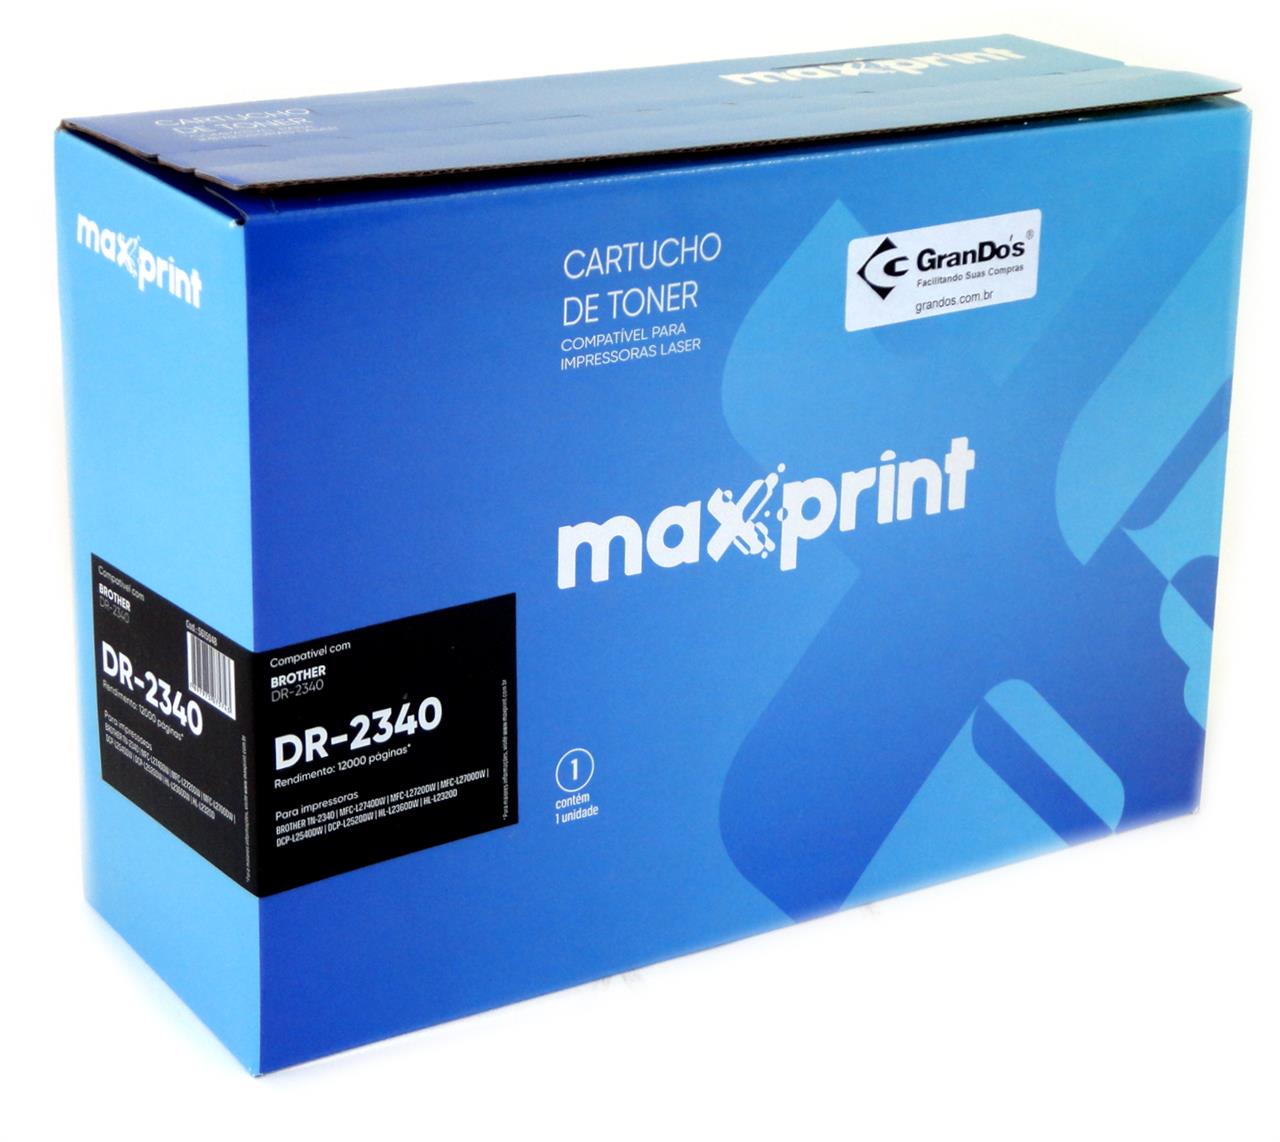 Toner e Fotocondutor para Brother - Fotocondutor Maxprint Brother DR 2340